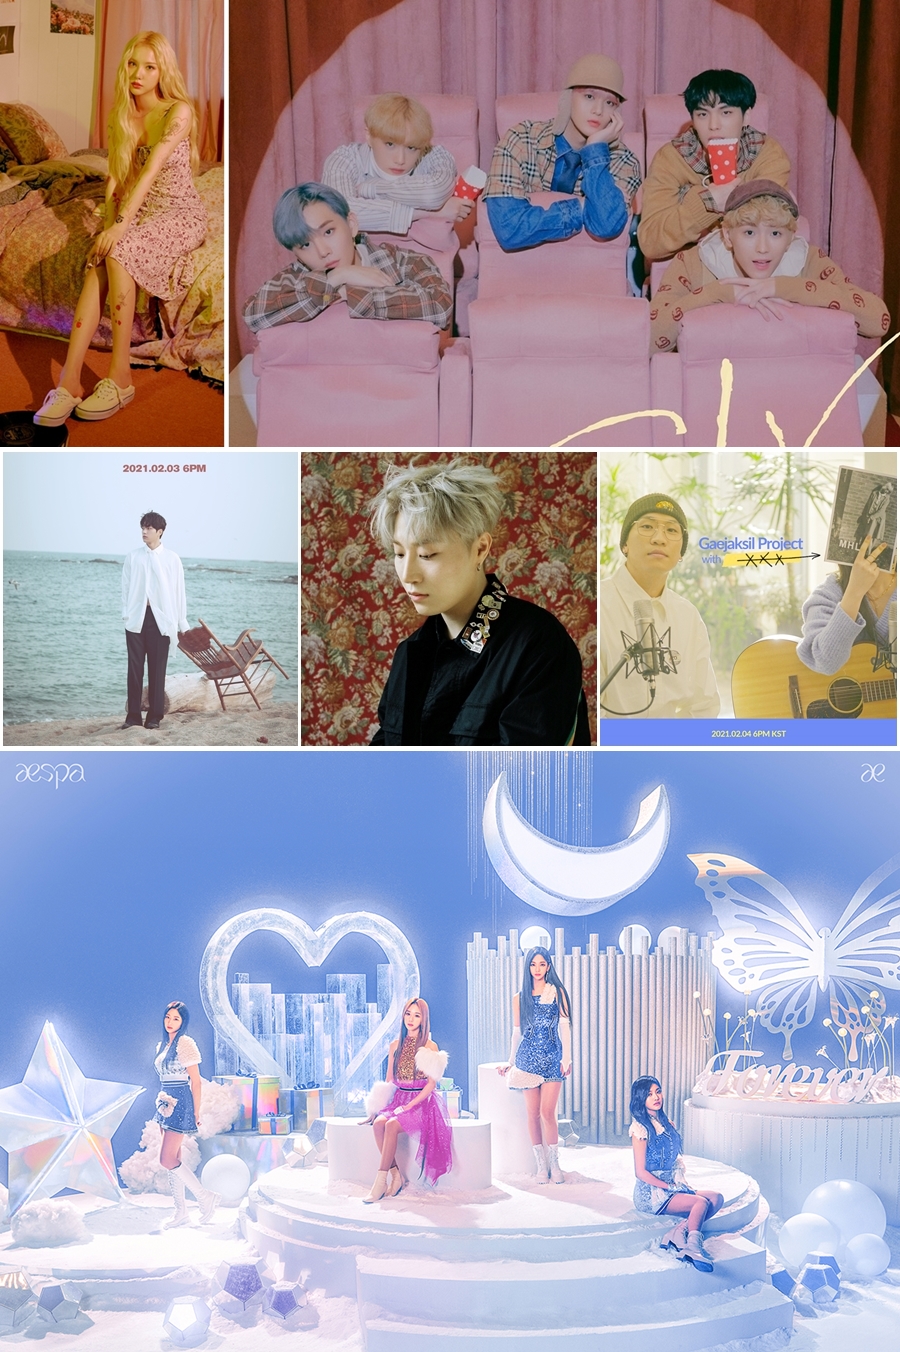 이번주 발매된 신곡 / 사진: 쏘스뮤직, C9, 매니지먼트 이상, AOMG, 아메바, SM엔터테인먼트 제공